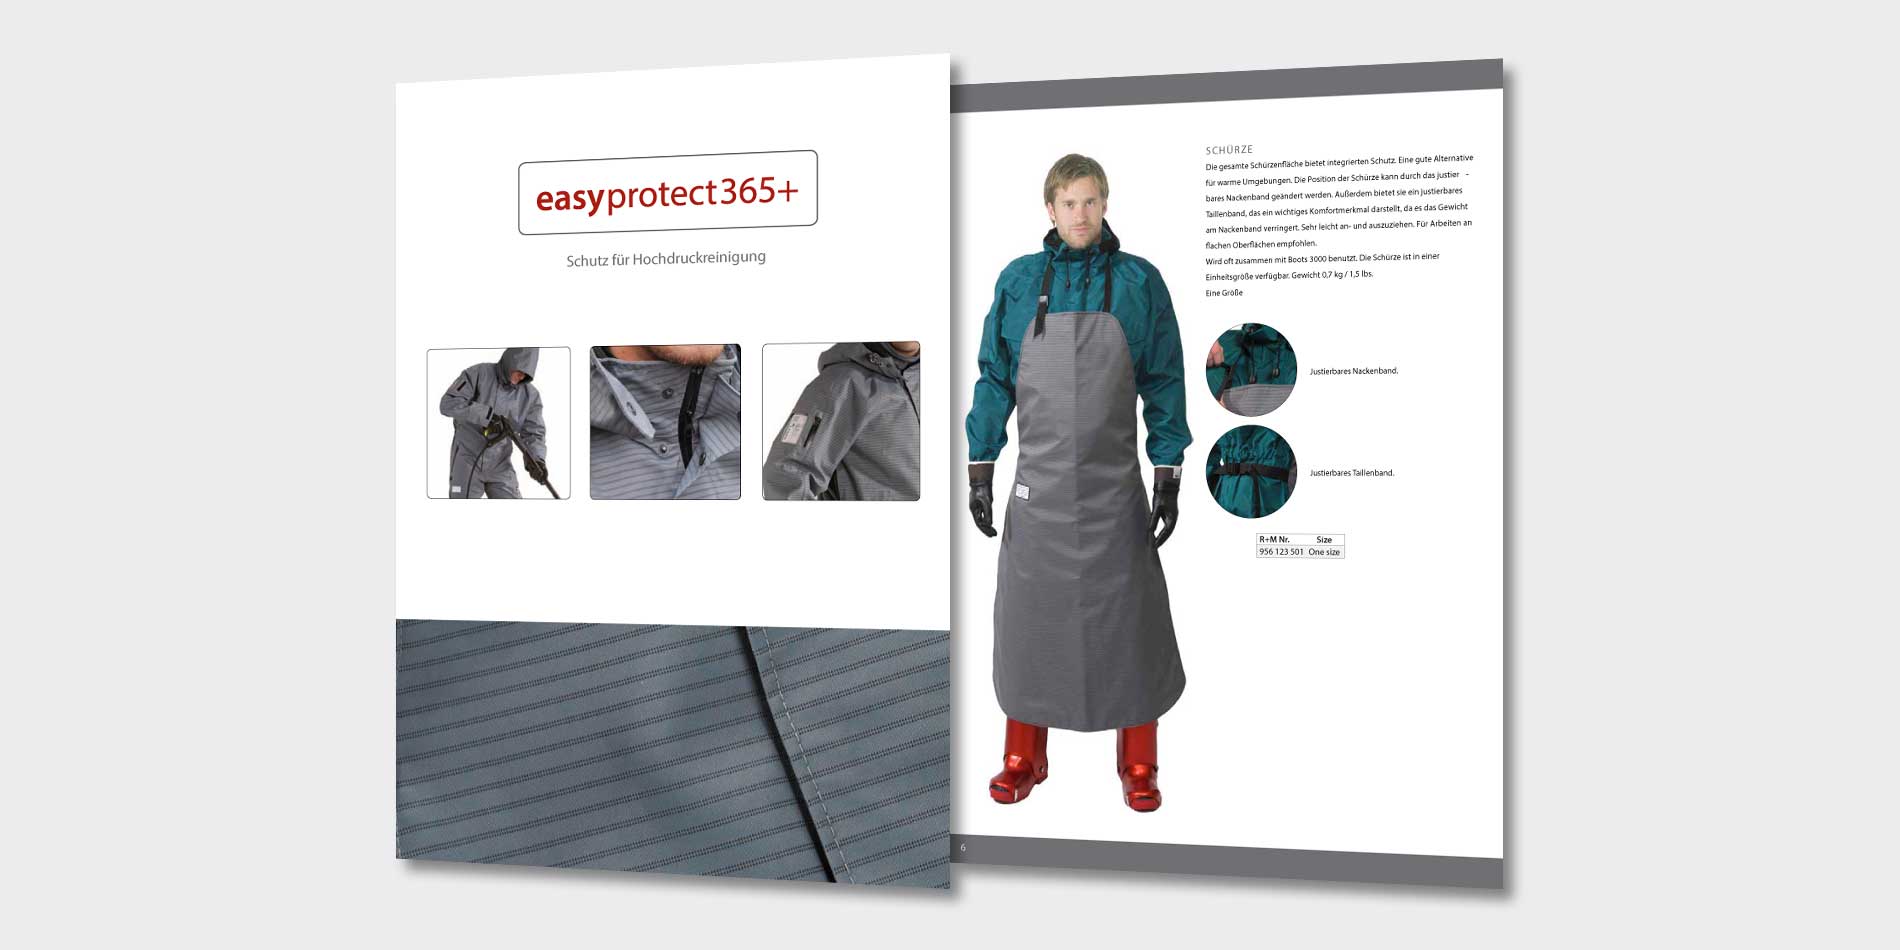 easyprotect365+ Komfort, Funktion und Sicherheit von R+M / Suttner